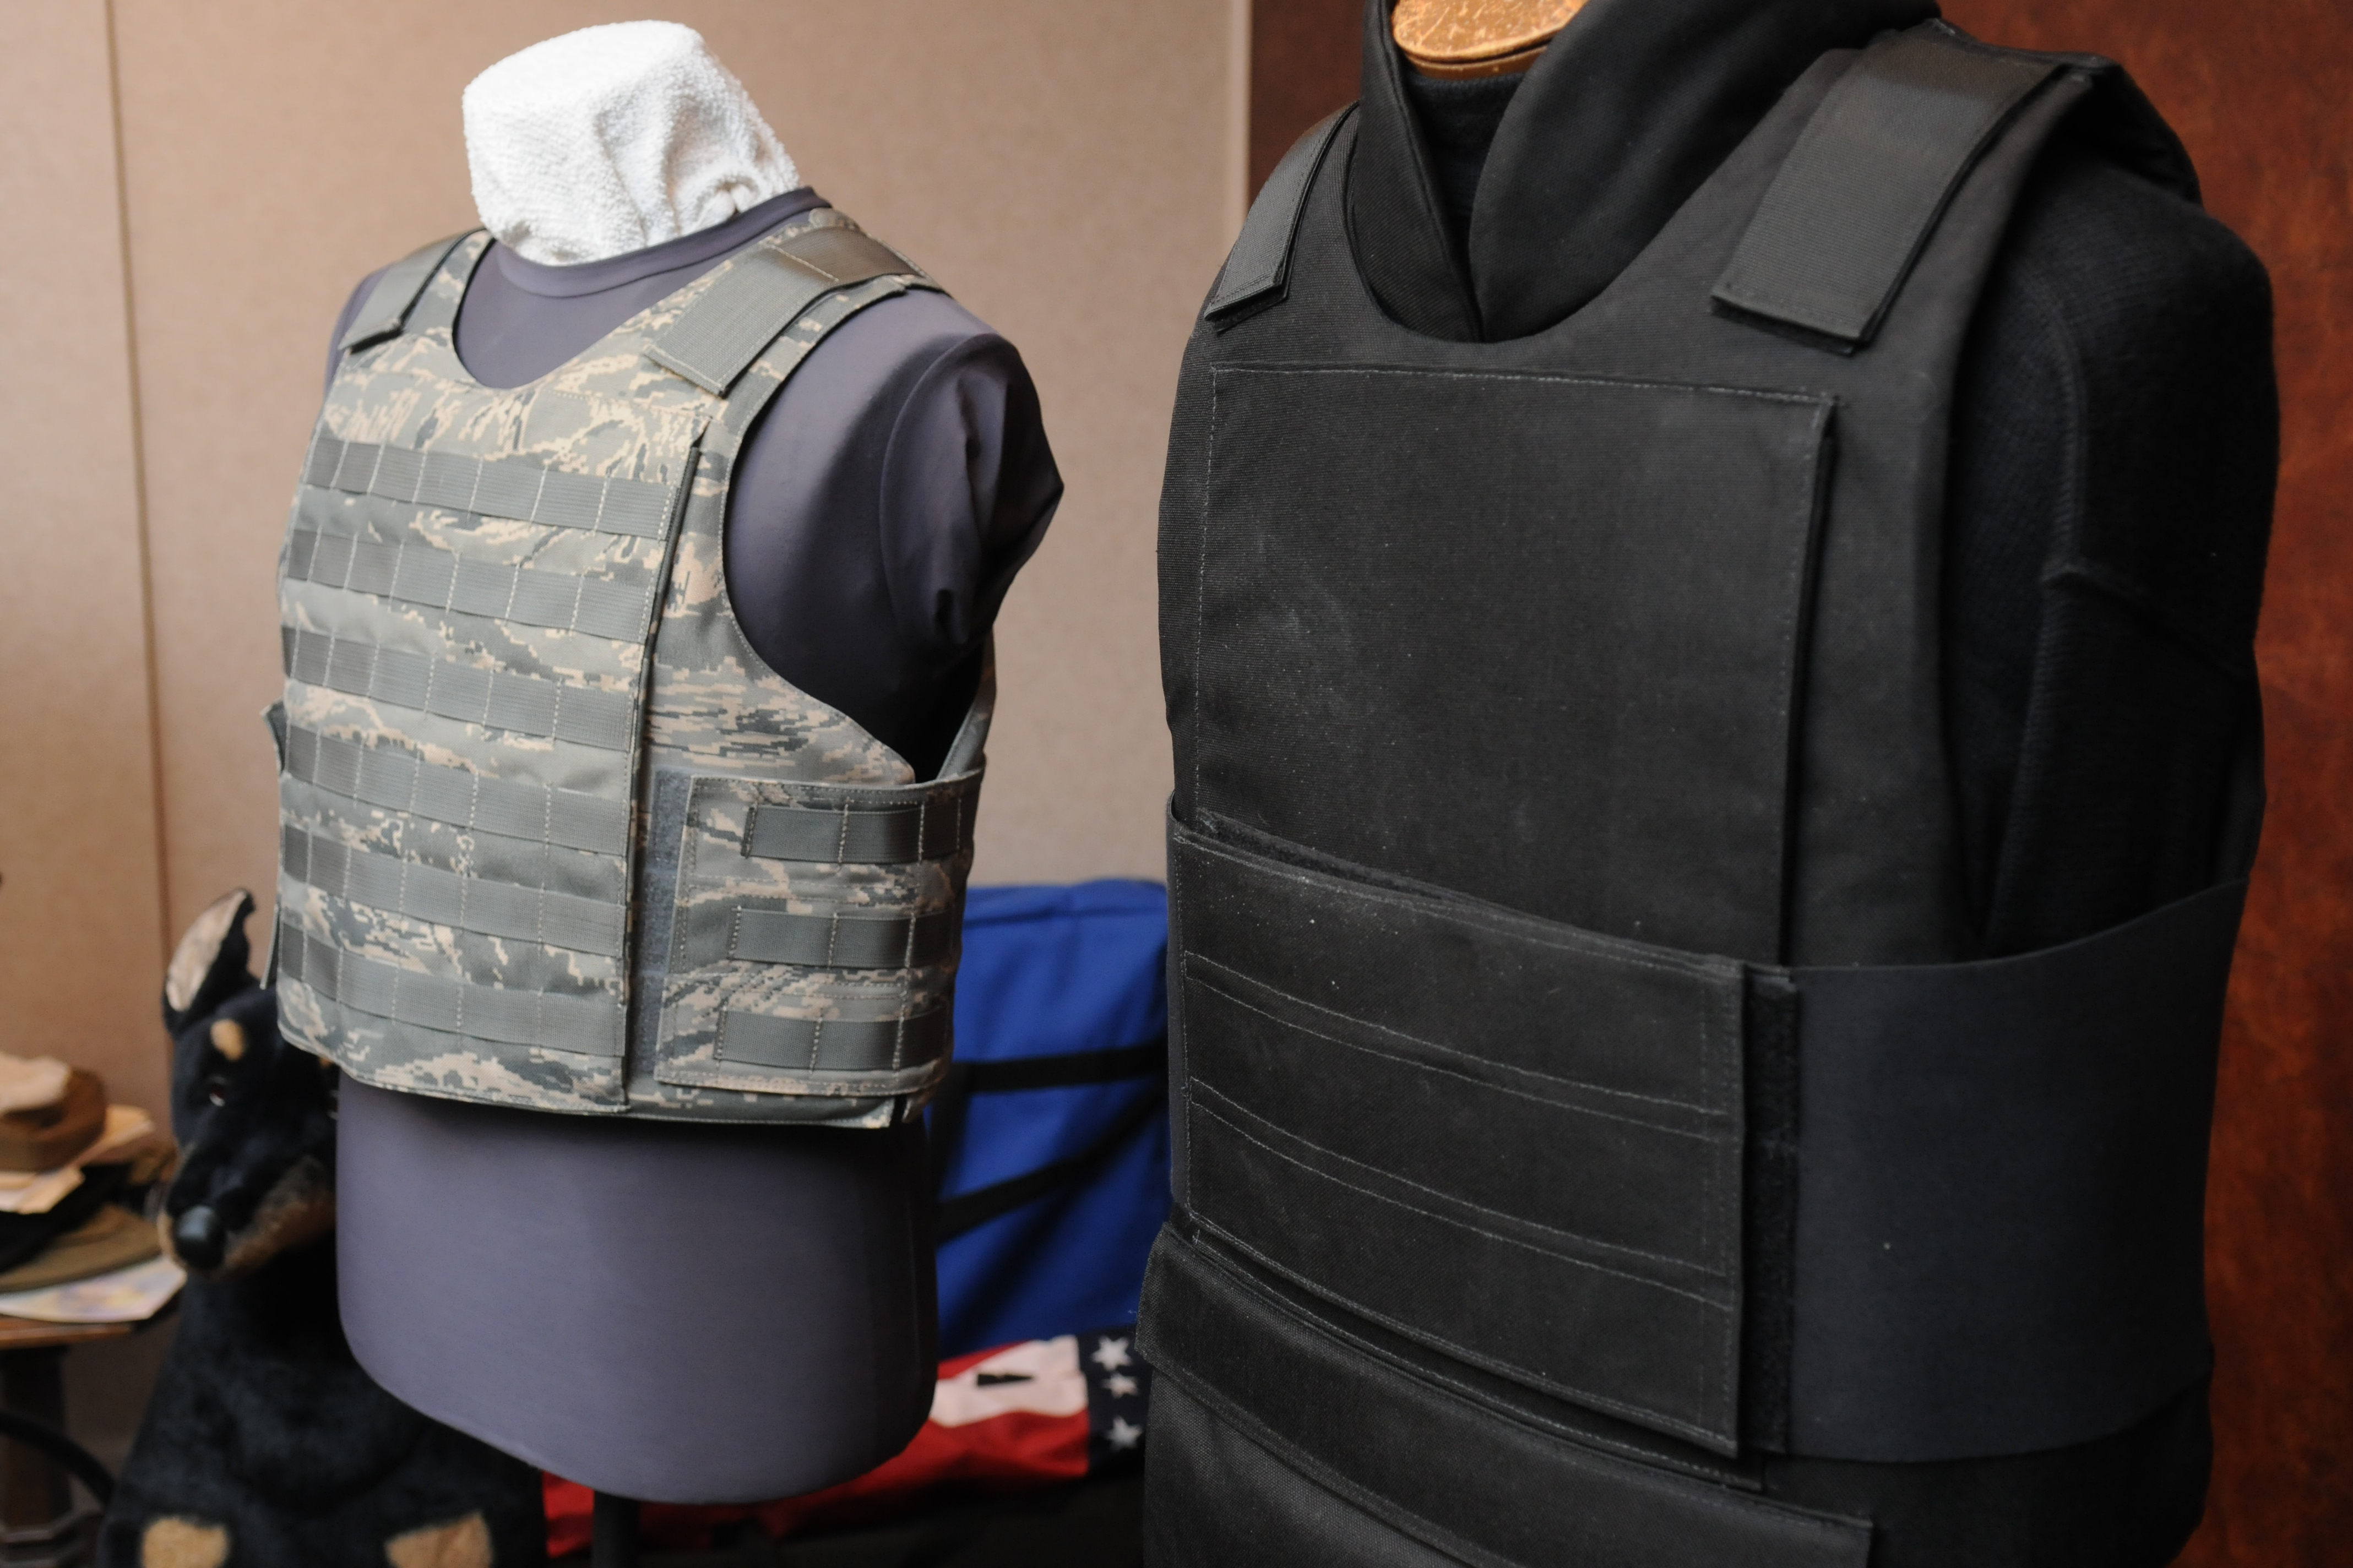 Bulletproof vest sales soar amid surge in NYC shootings